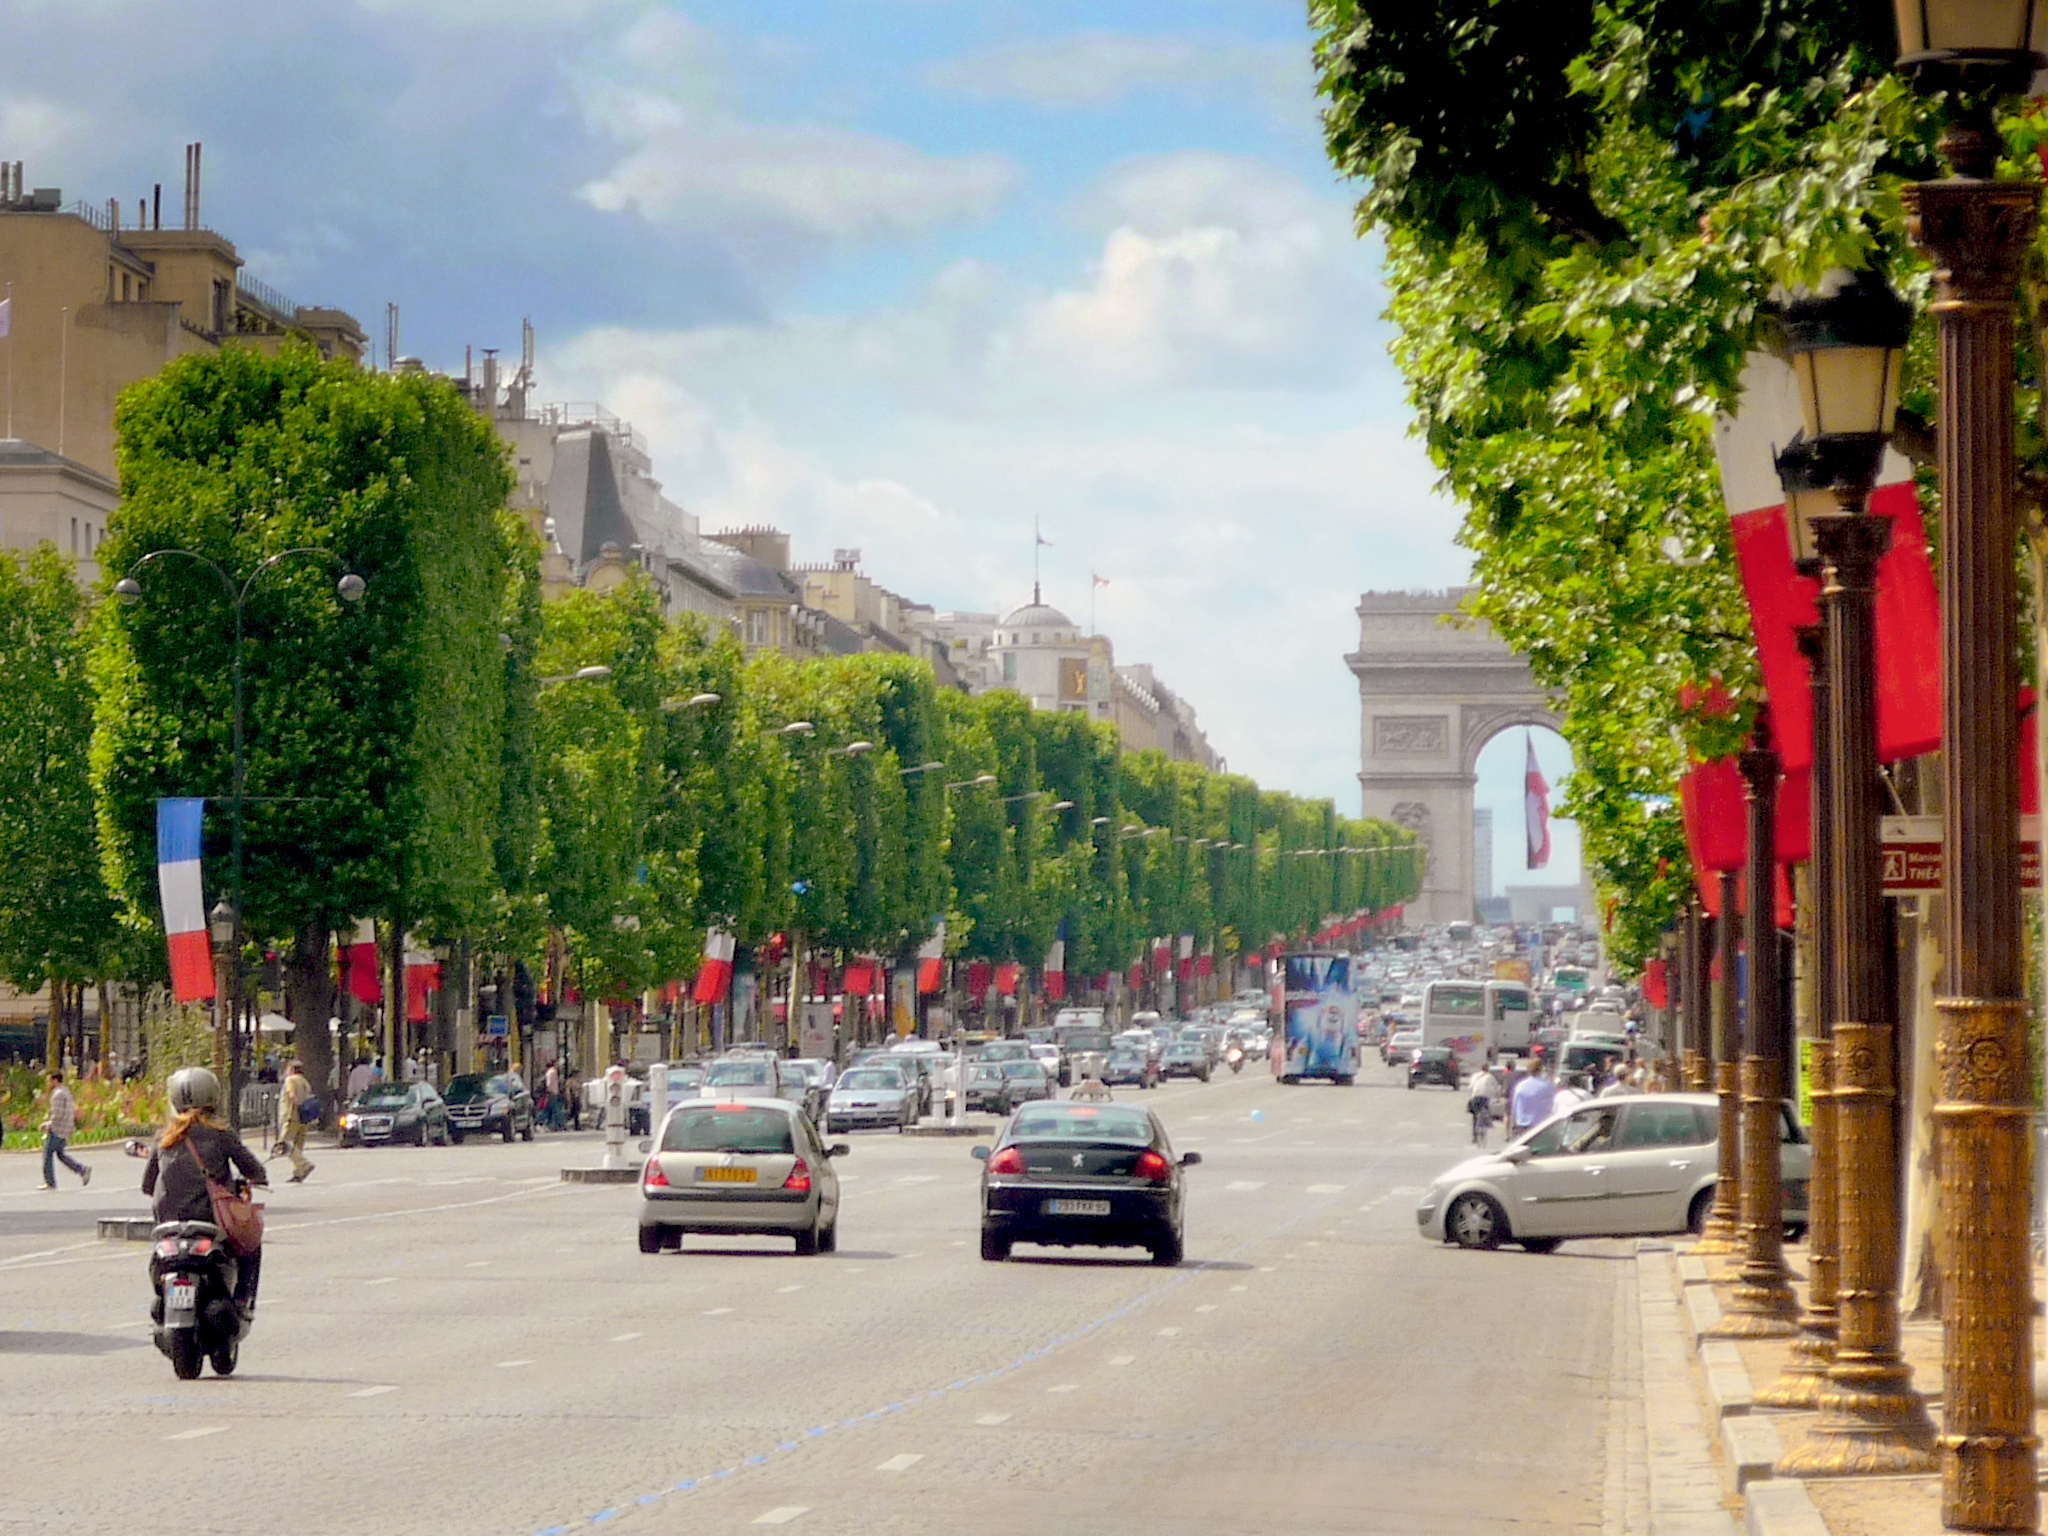 Avenue des Champs-Elysées